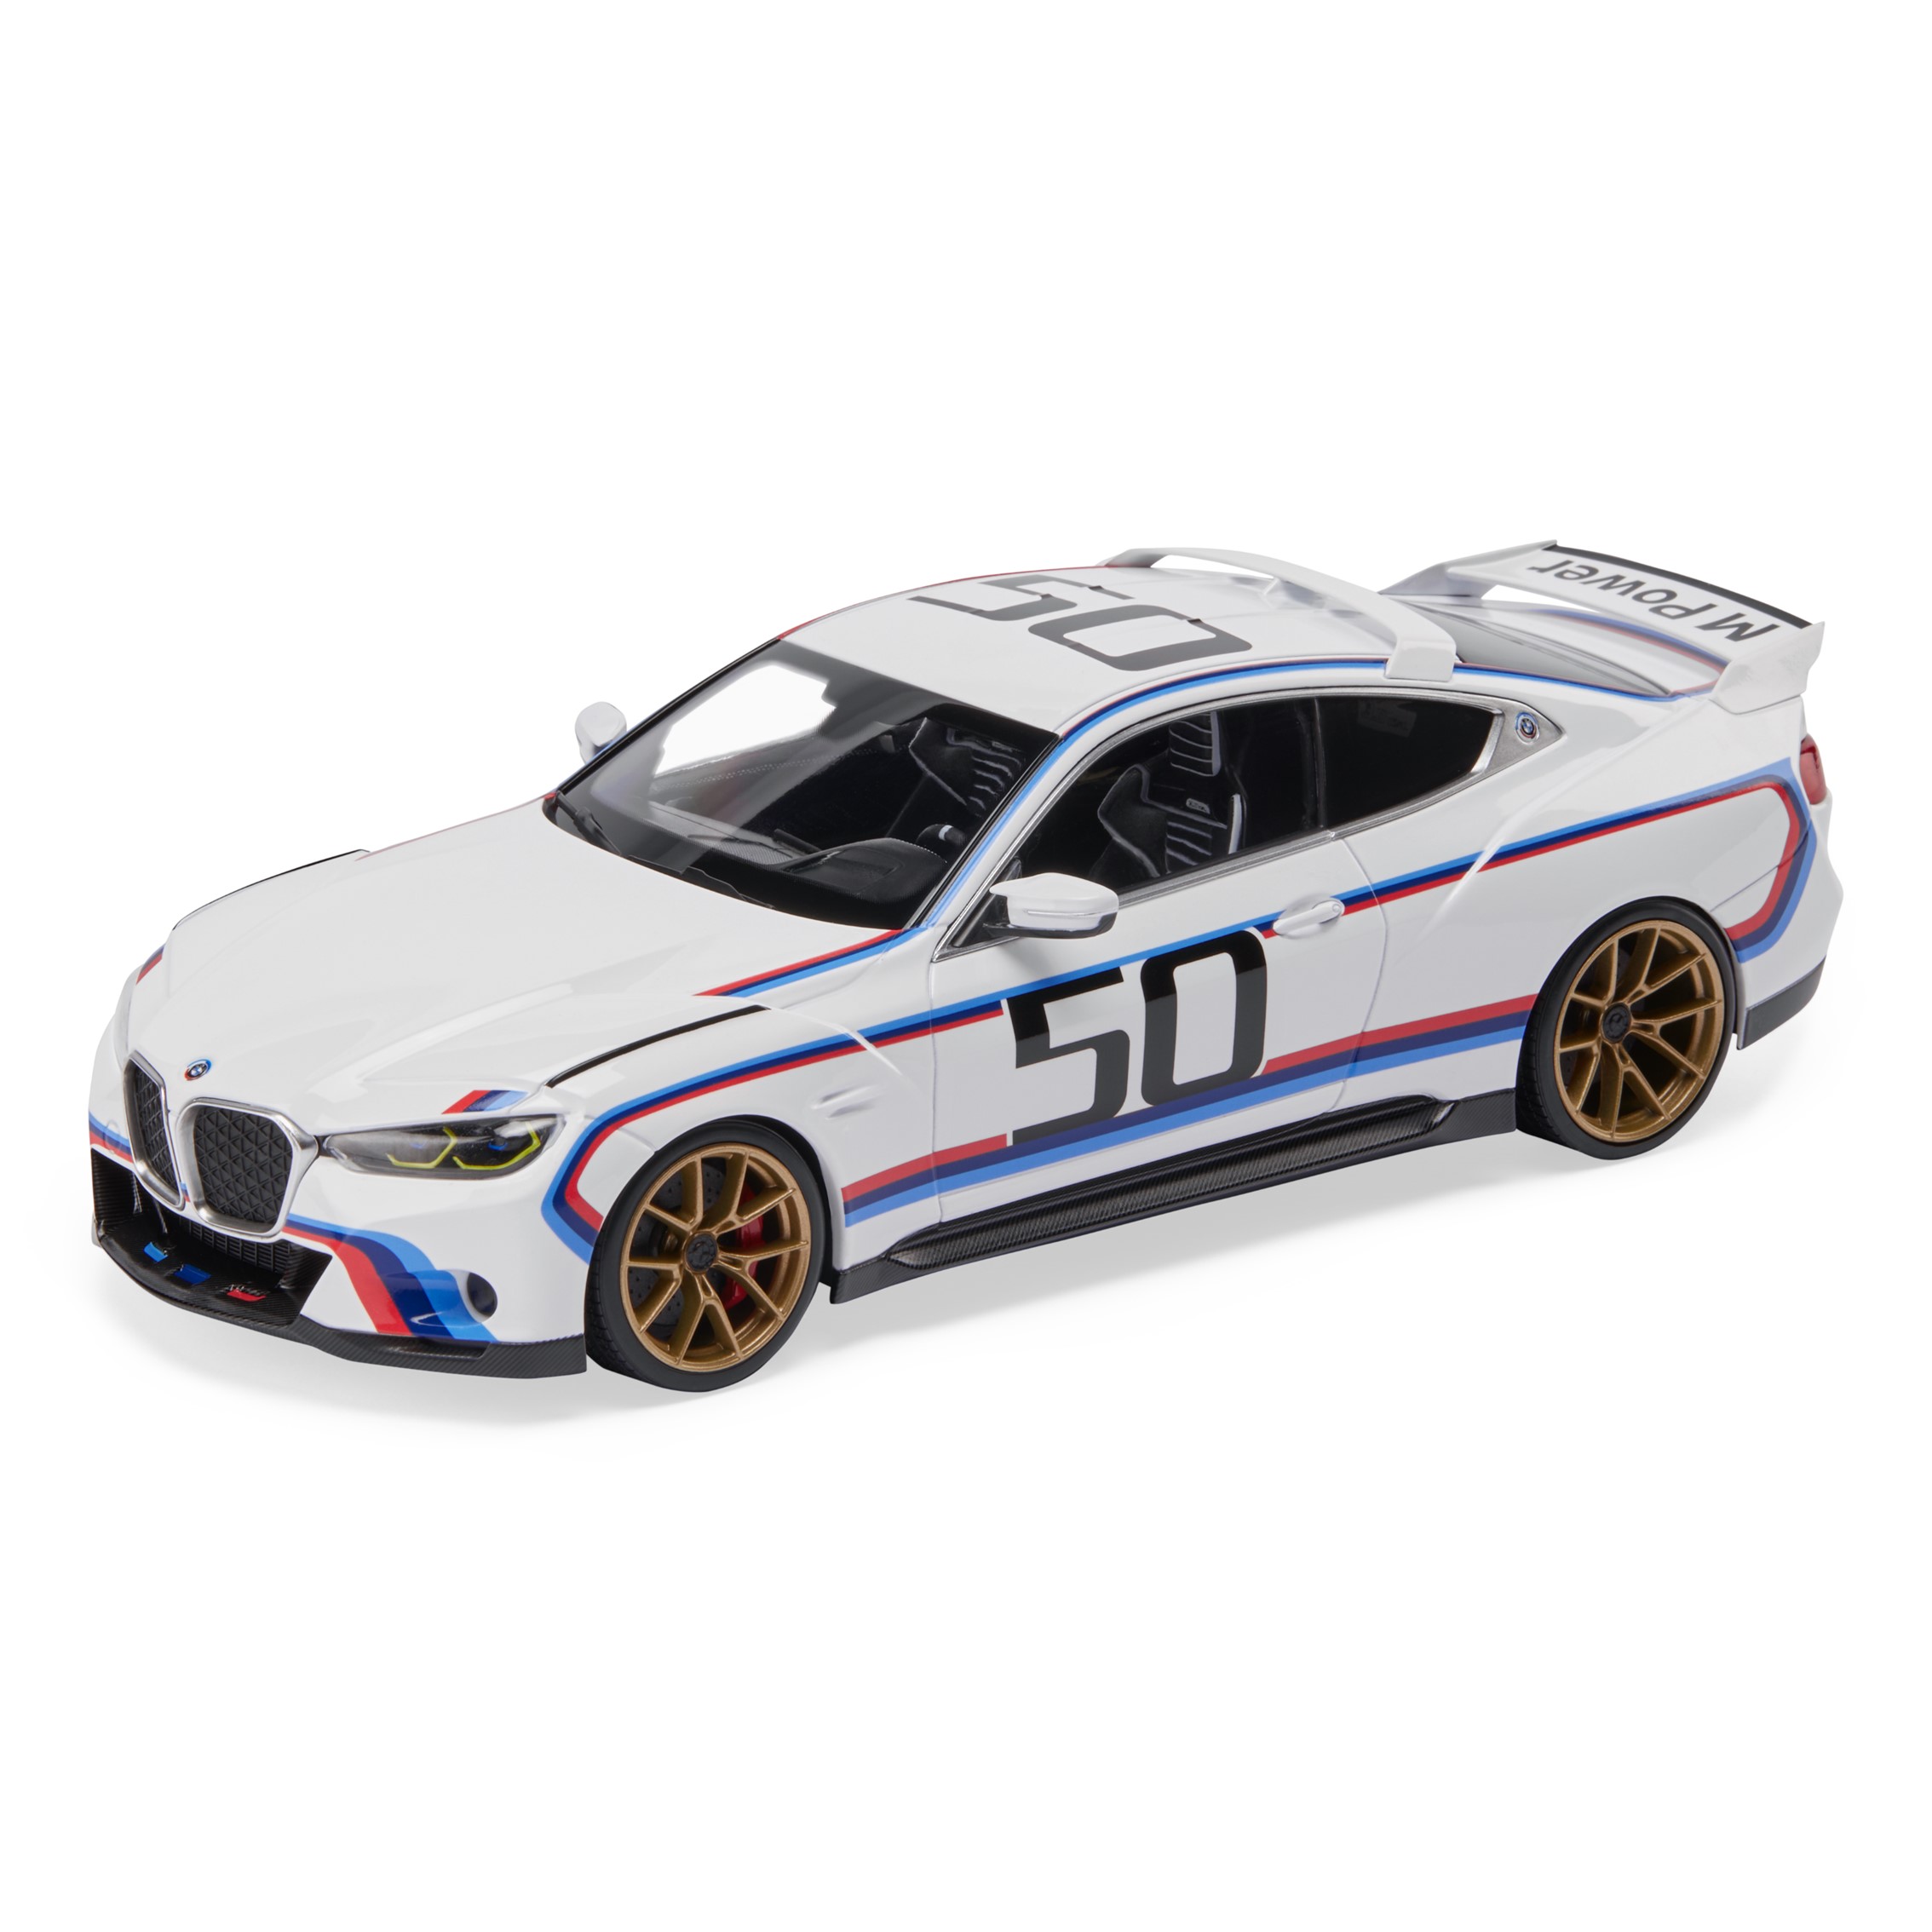 BMW 3.0 CSL模型車1:18